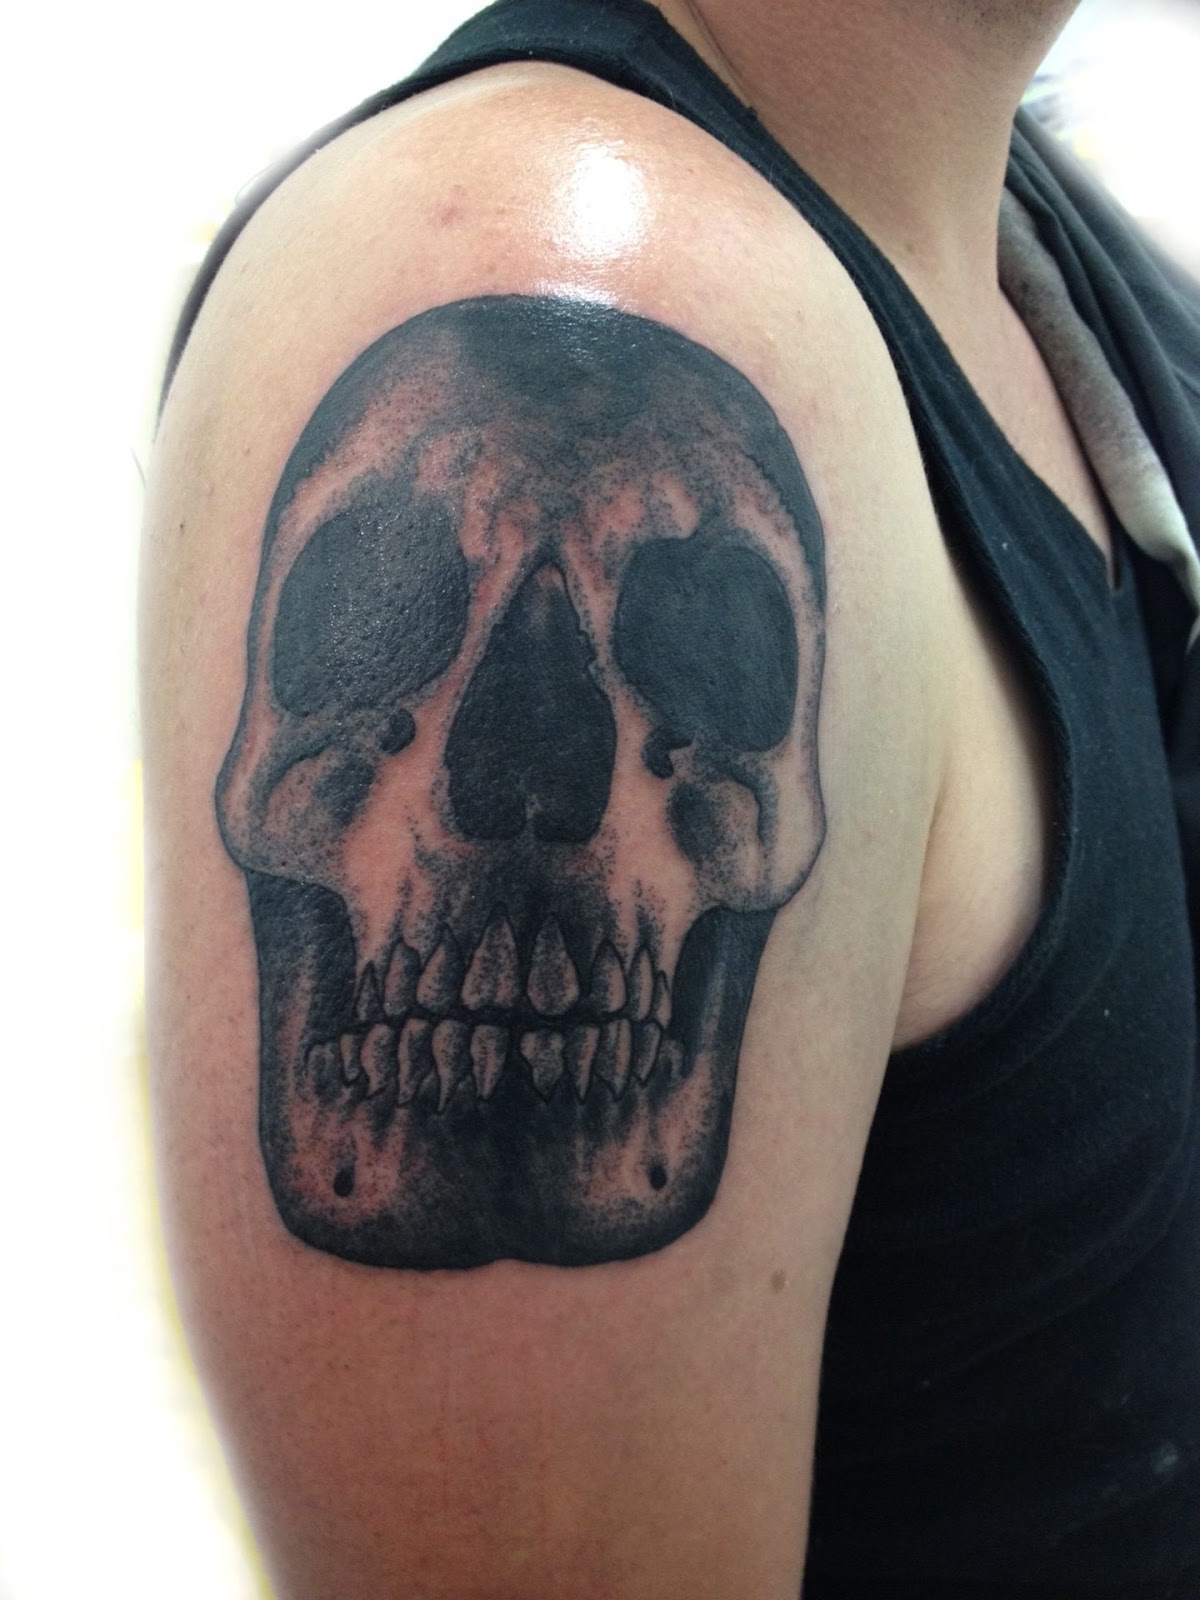 skull half sleeve tattoo designs